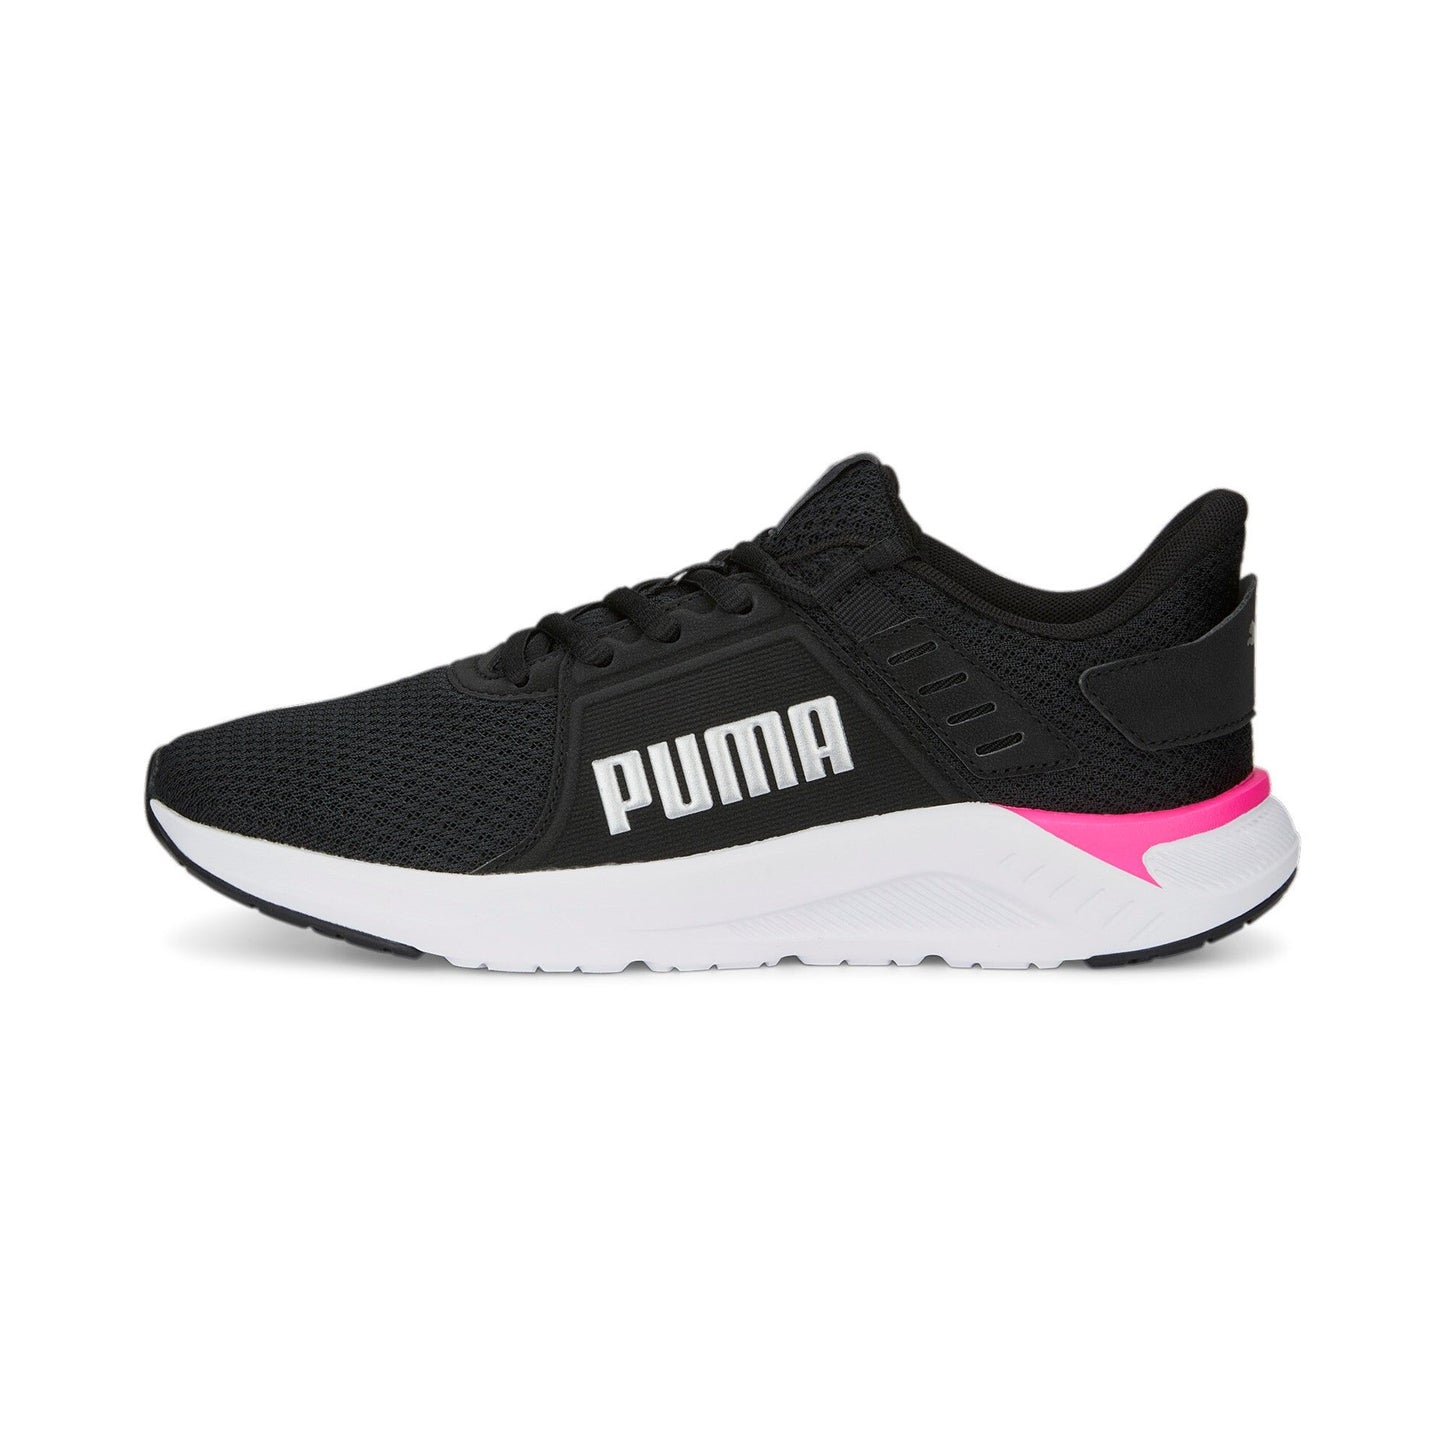 Zapatillas mujer Puma FTR CONNECT negro - rosa